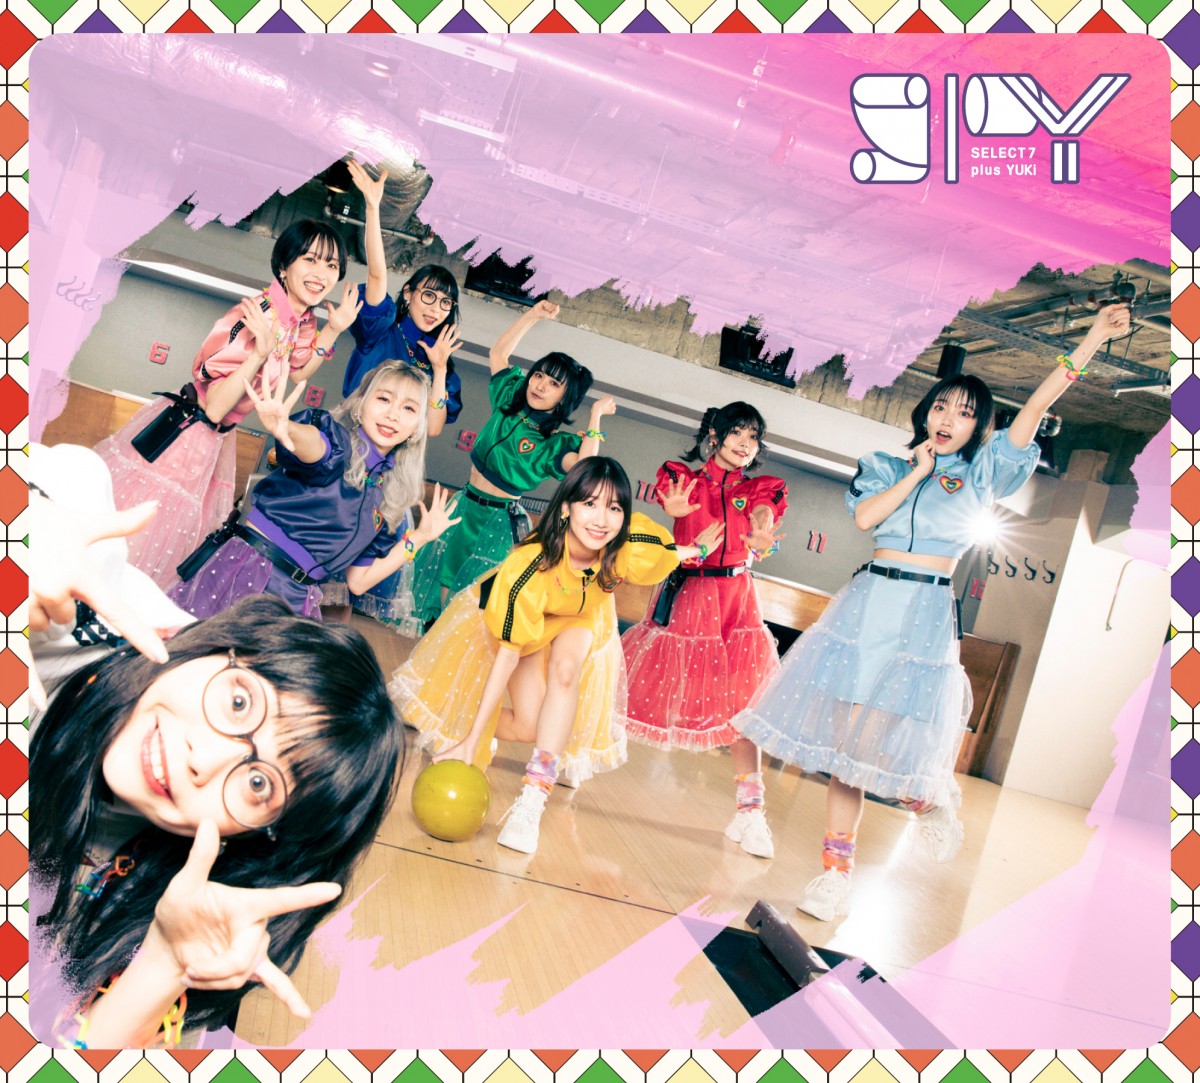 画像・写真 | 柏木由紀、BiSHら“新人”SPY、AKB48劇場で歌って踊る